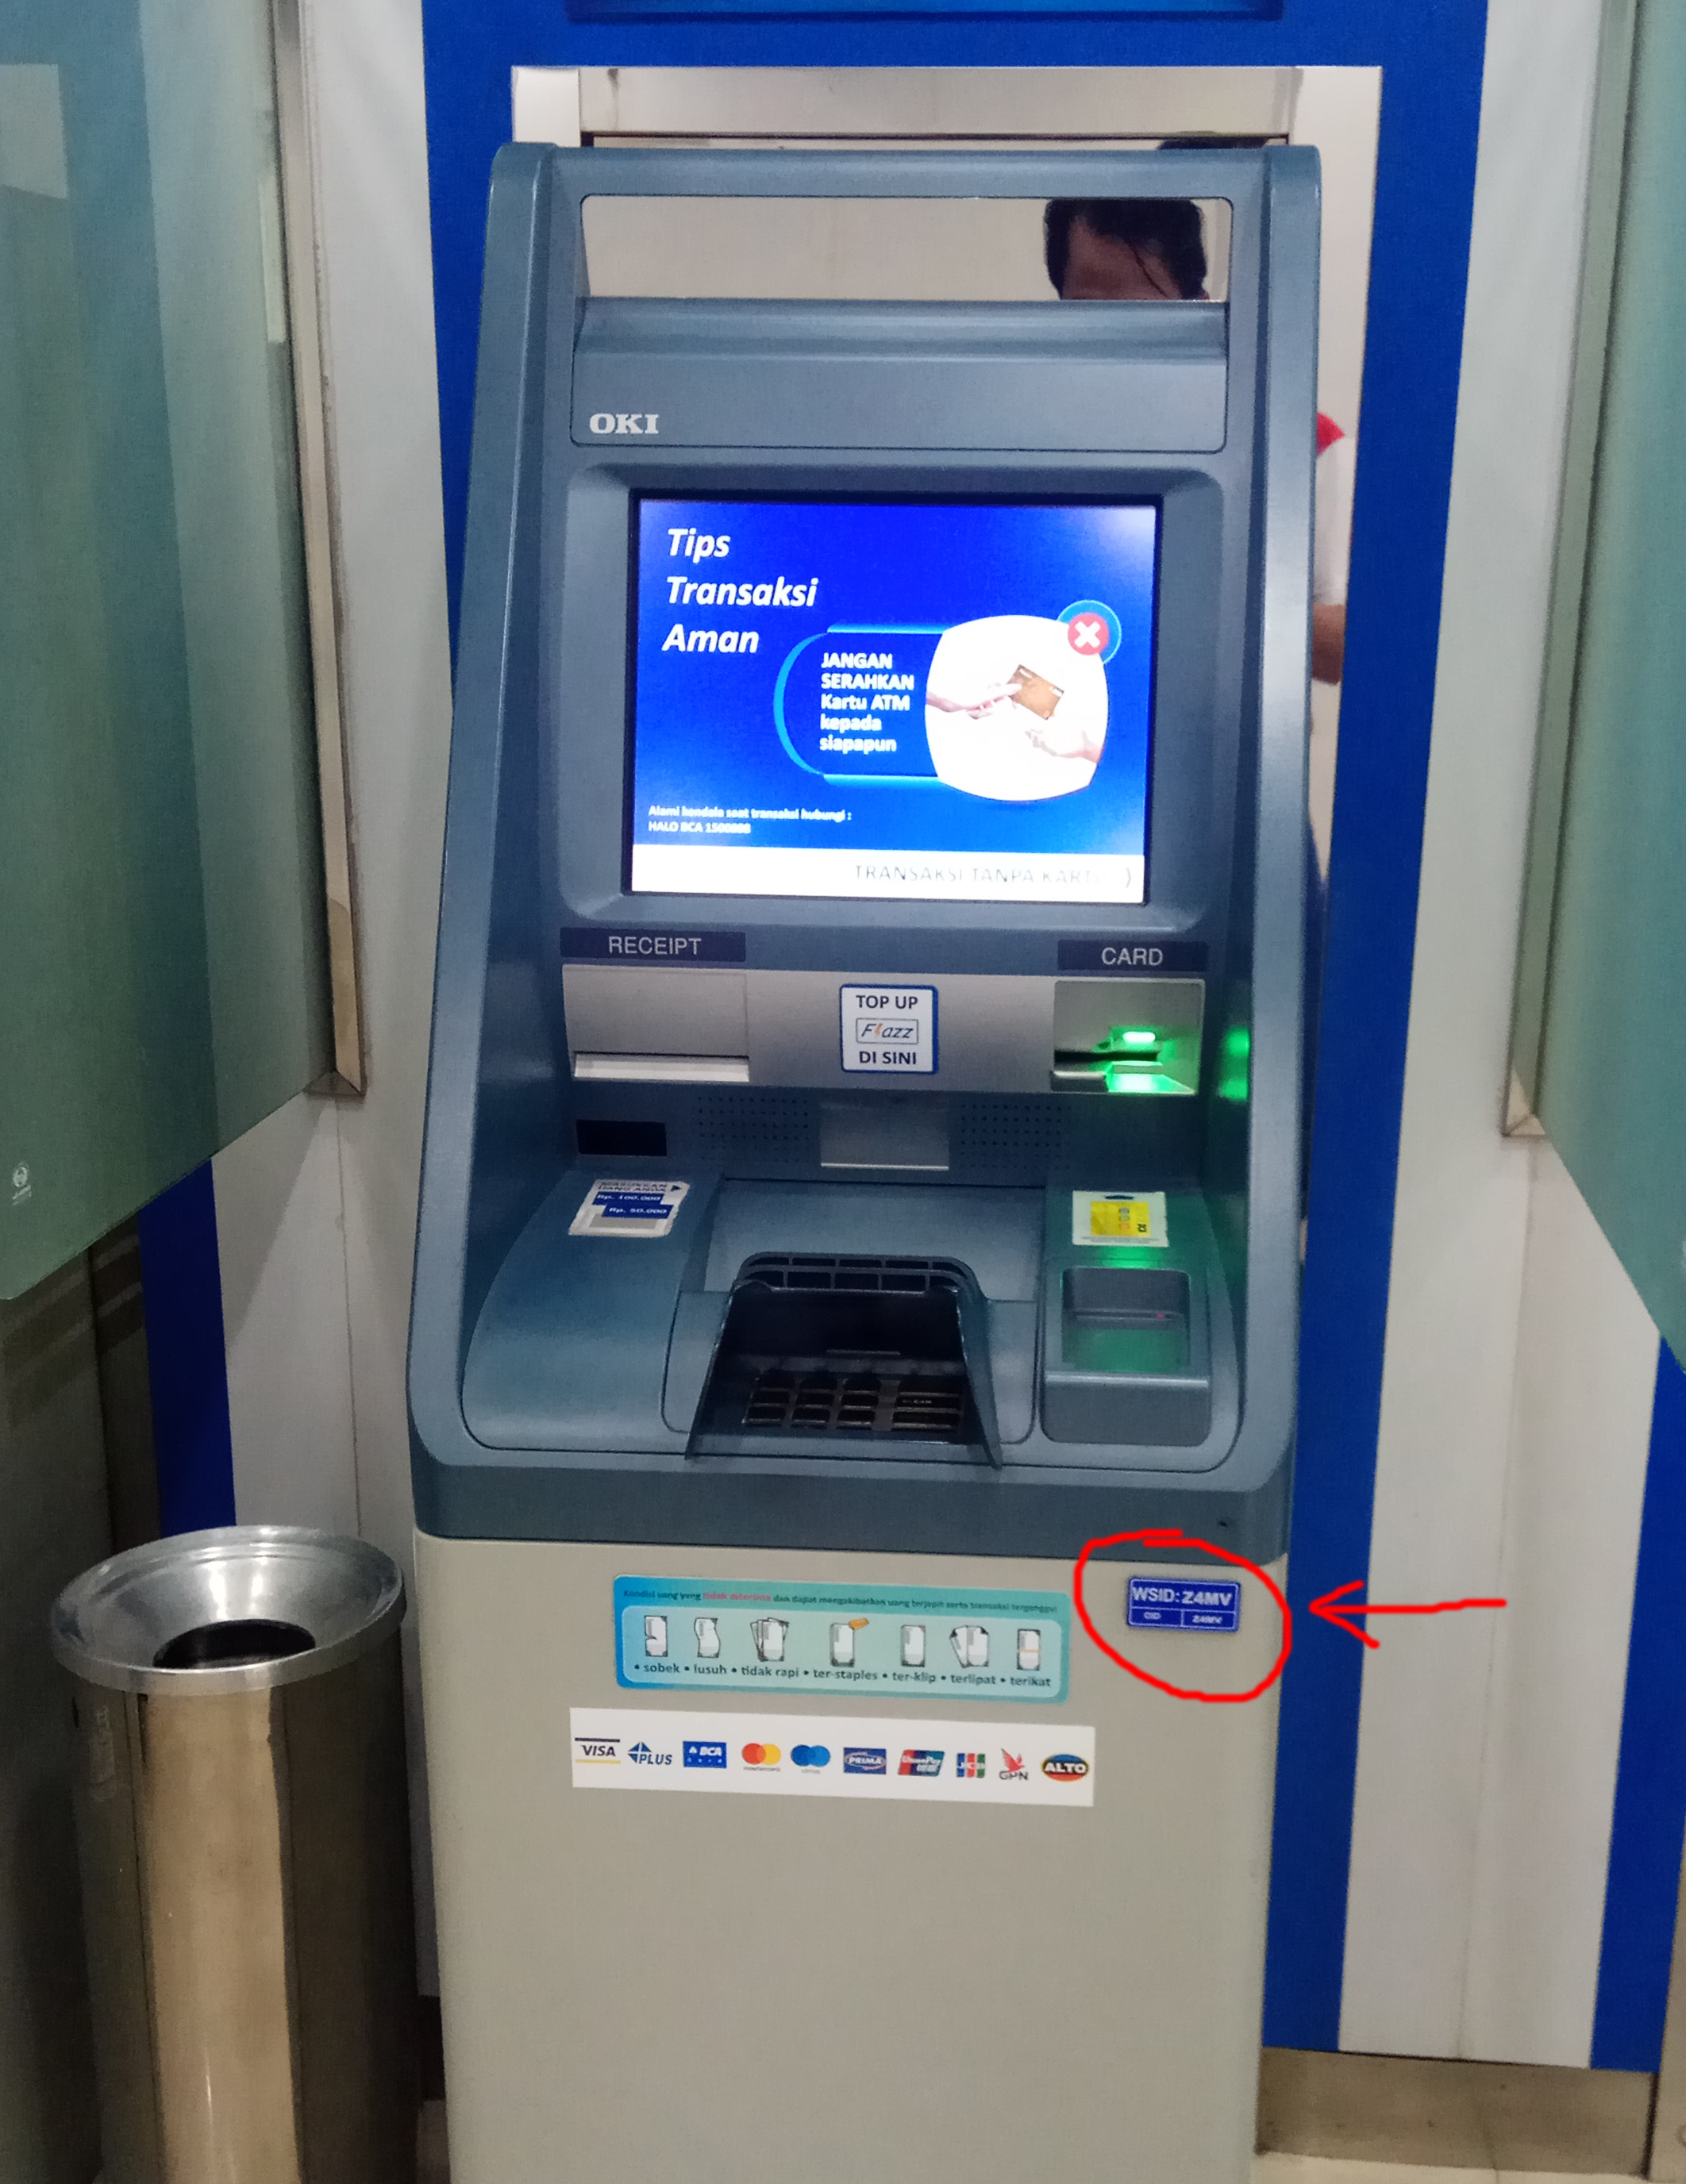 T me atm deep insert. ATM BCA. ATM 60032838 kommunar. NBE ATM. Krungtai ATM.